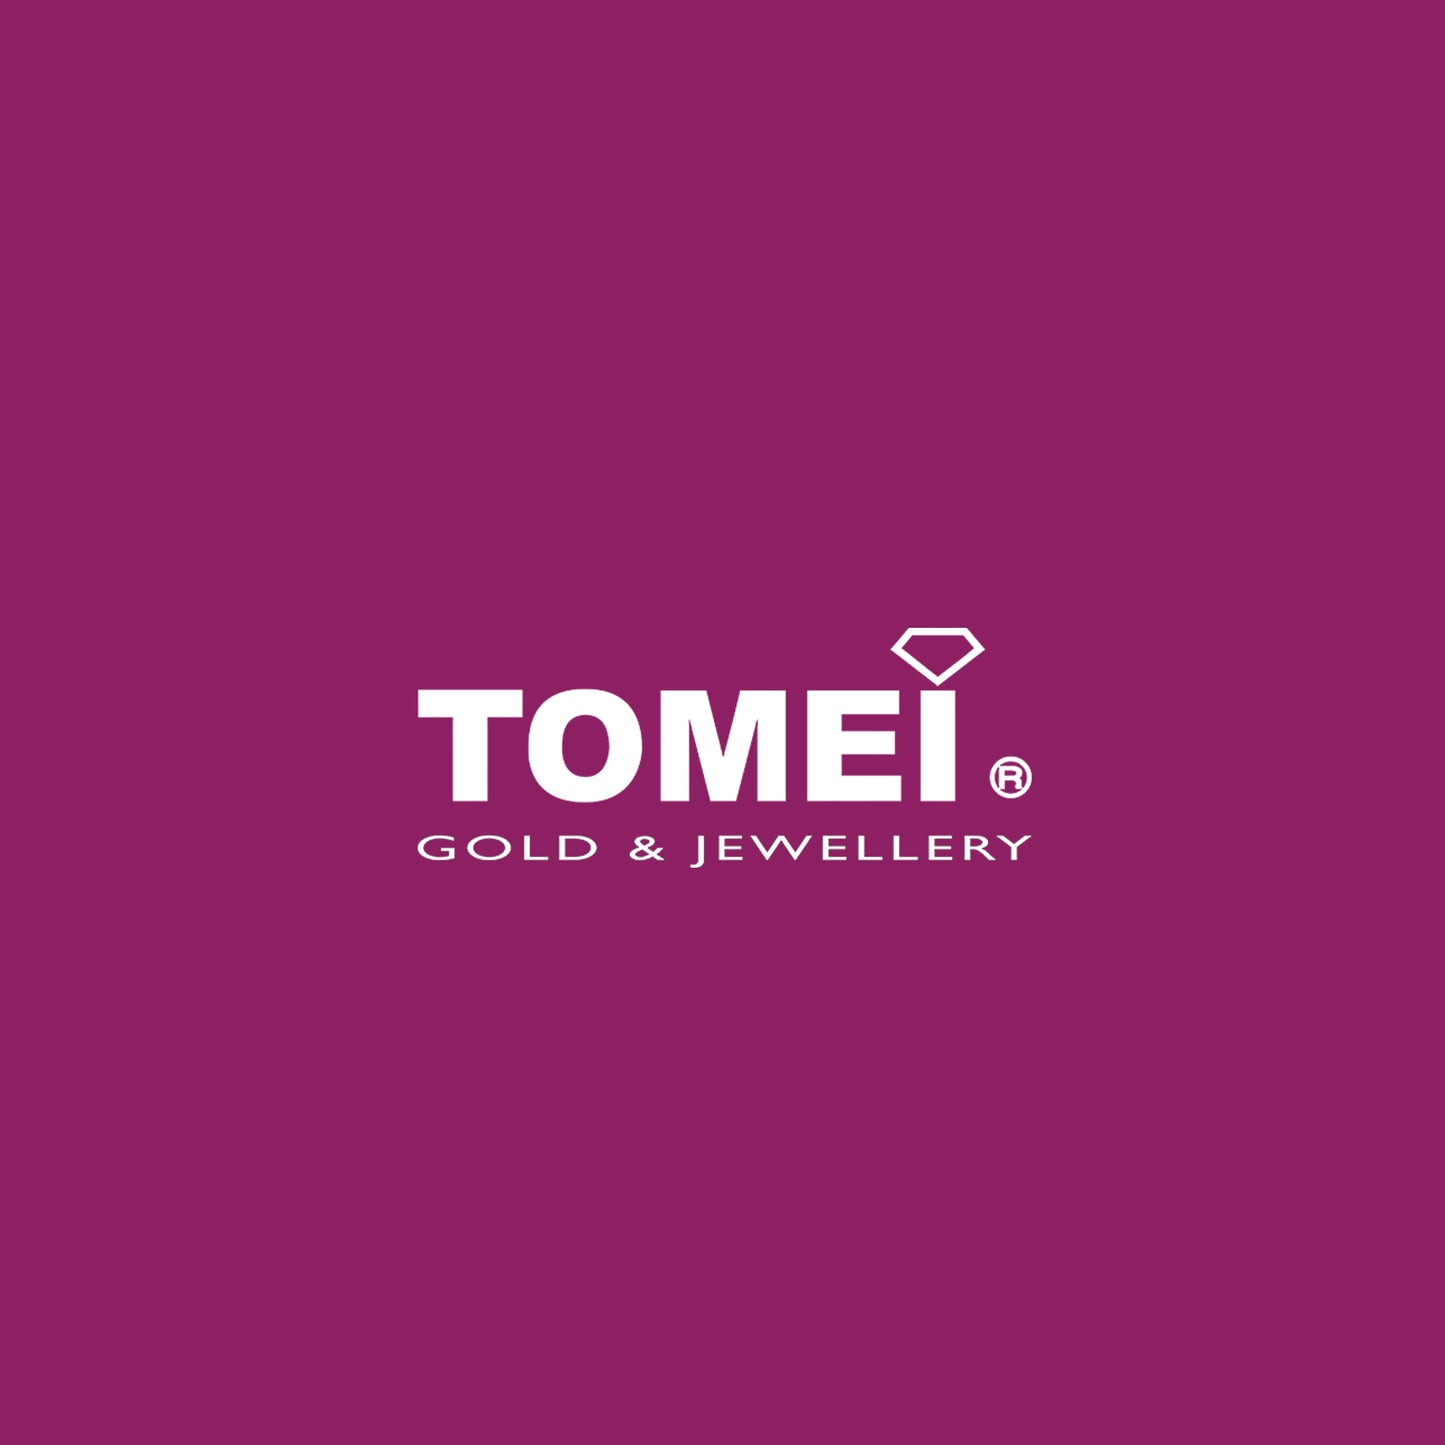 TOMEI Ring, Diamond White Gold 750 (STR5026)